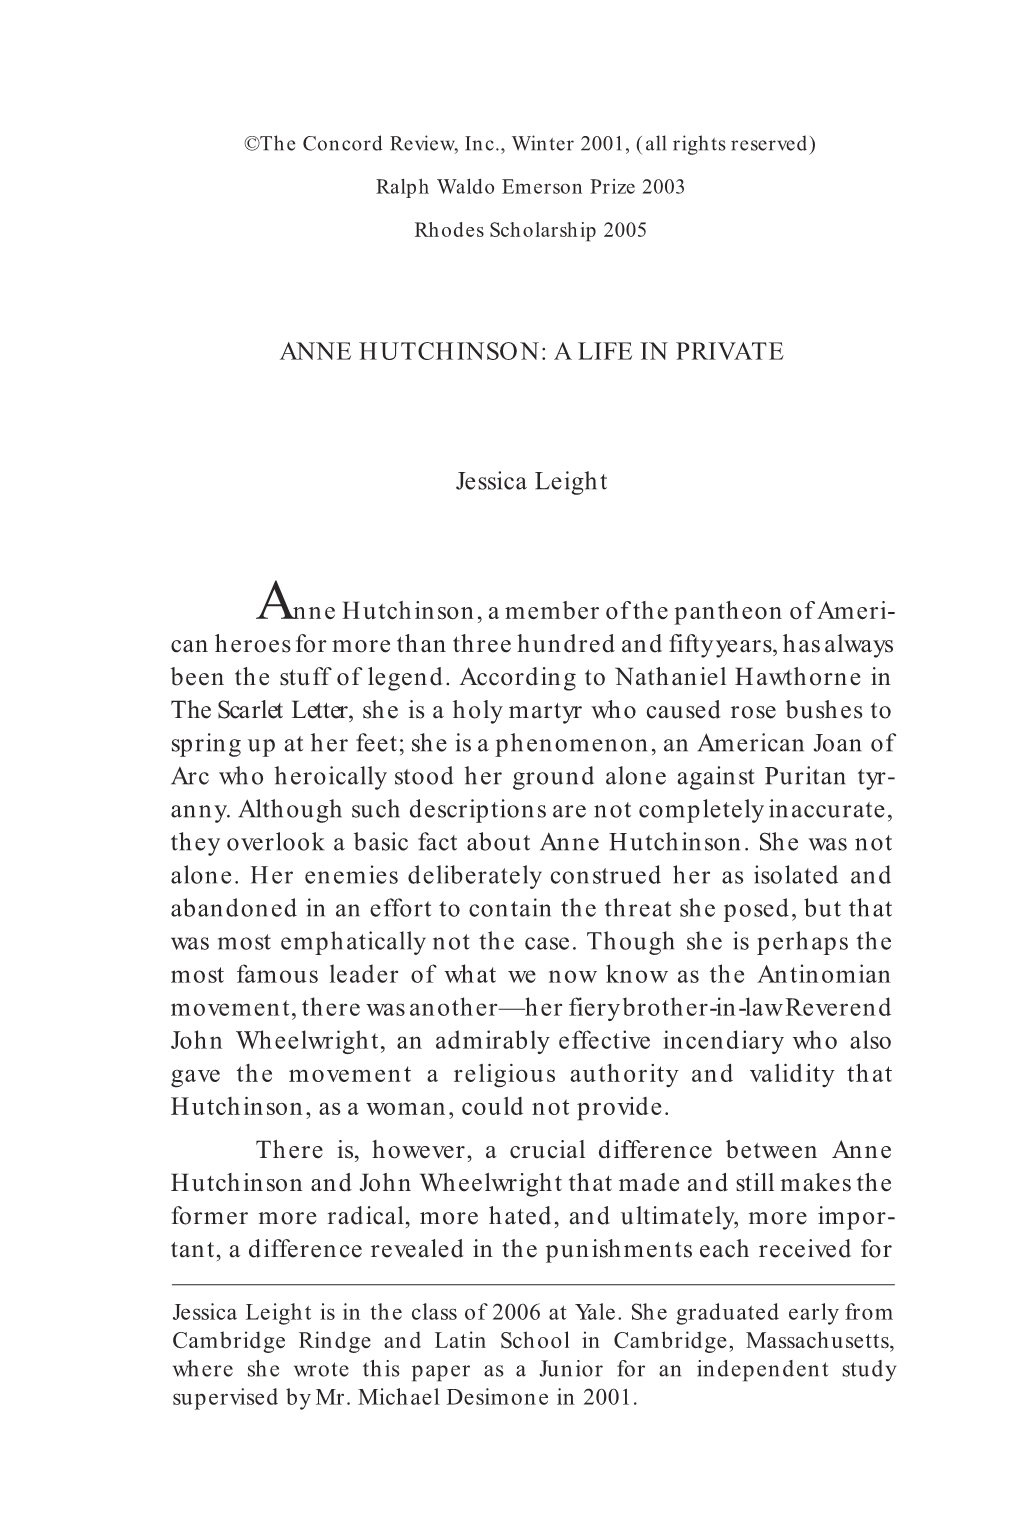 Anne Hutchinson: a Life in Private